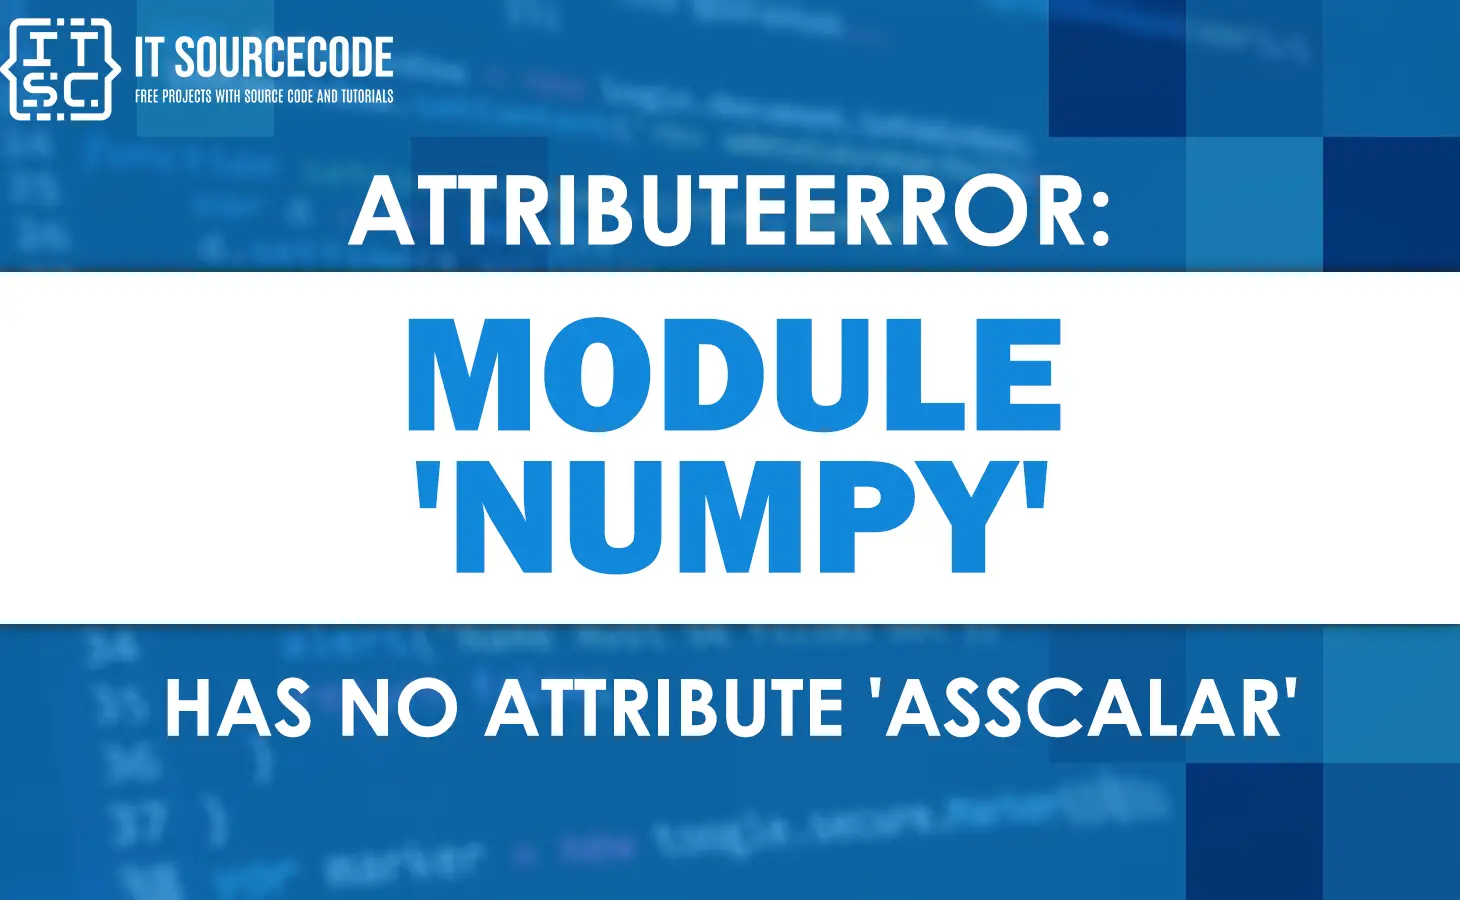 Attributeerror: module 'numpy' has no attribute 'asscalar'